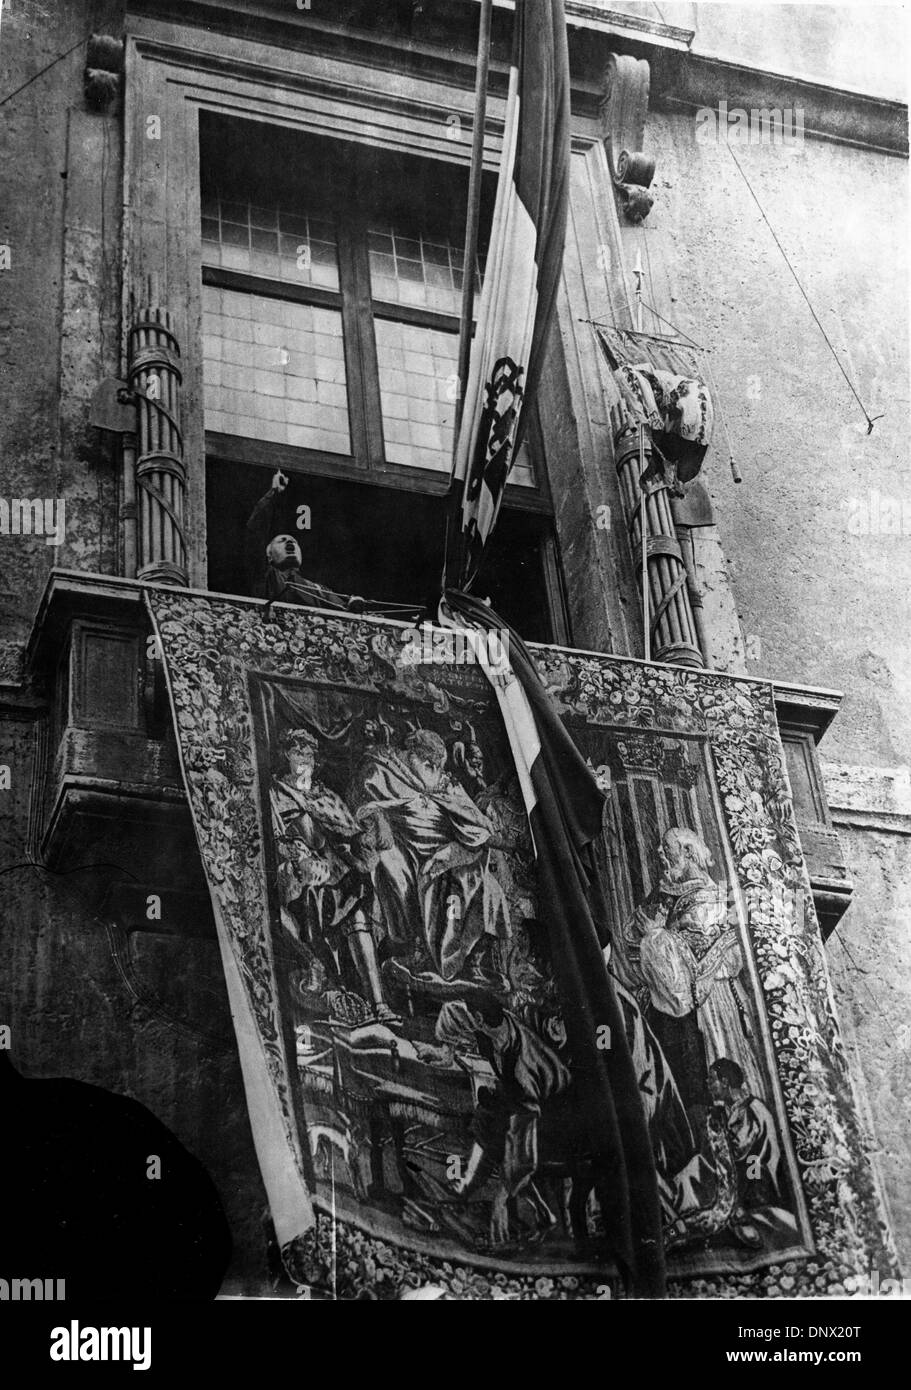 Marzo 25, 1938 - Roma, Italia - BENITO MUSSOLINI (1883-1945) il dittatore italiano e leader del movimento fascista sul balcone della Palazzio Venezia affrontare la folla. (Credito Immagine: © Keystone foto/ZUMAPRESS.com) Foto Stock